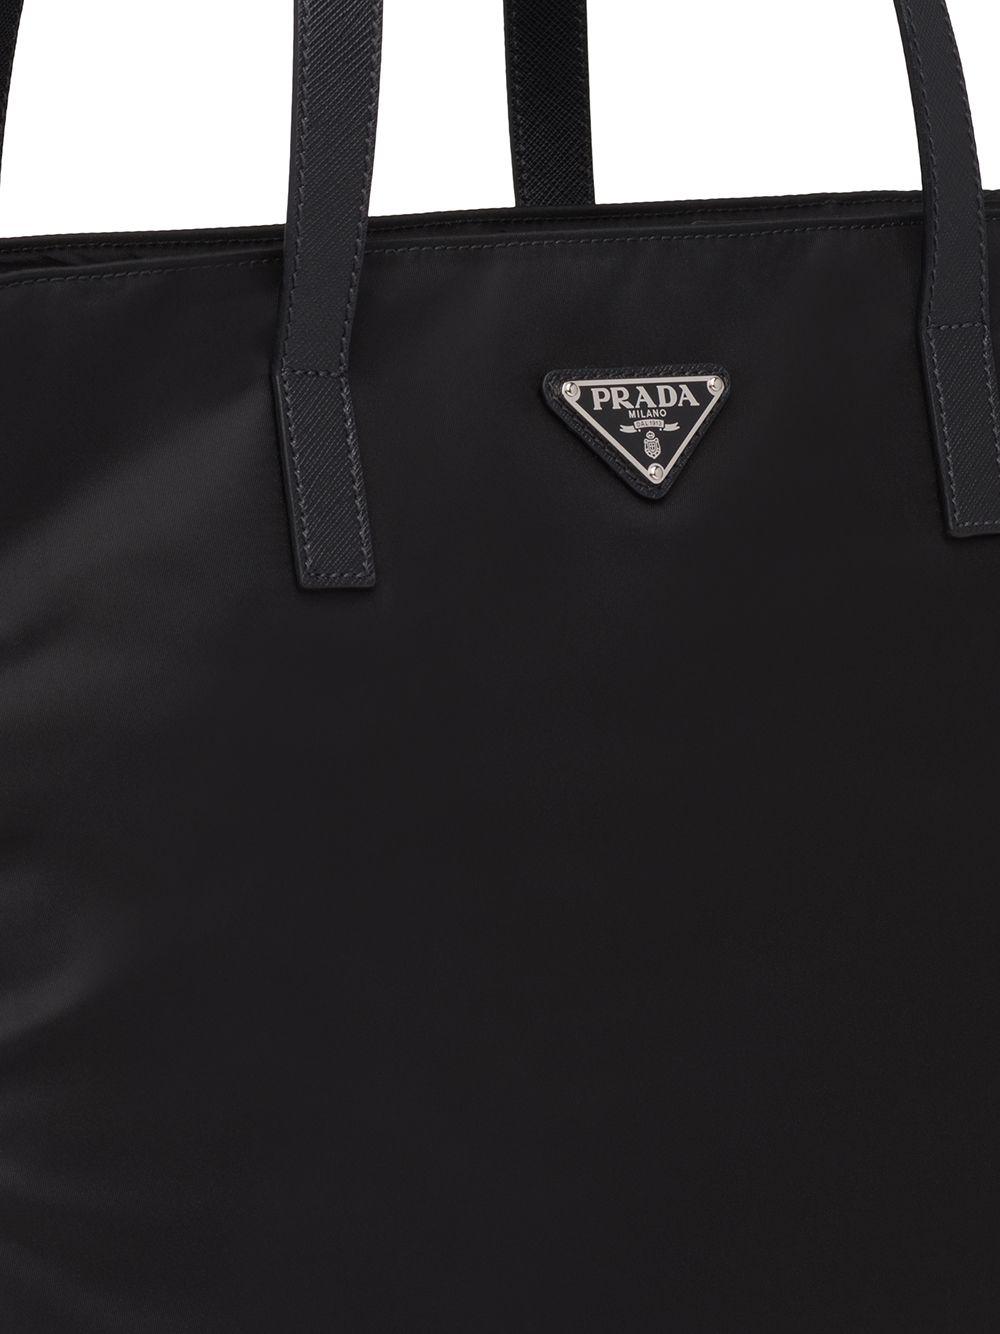 Prada Synthetic Nylon Tote Bag in Black for Men | Lyst